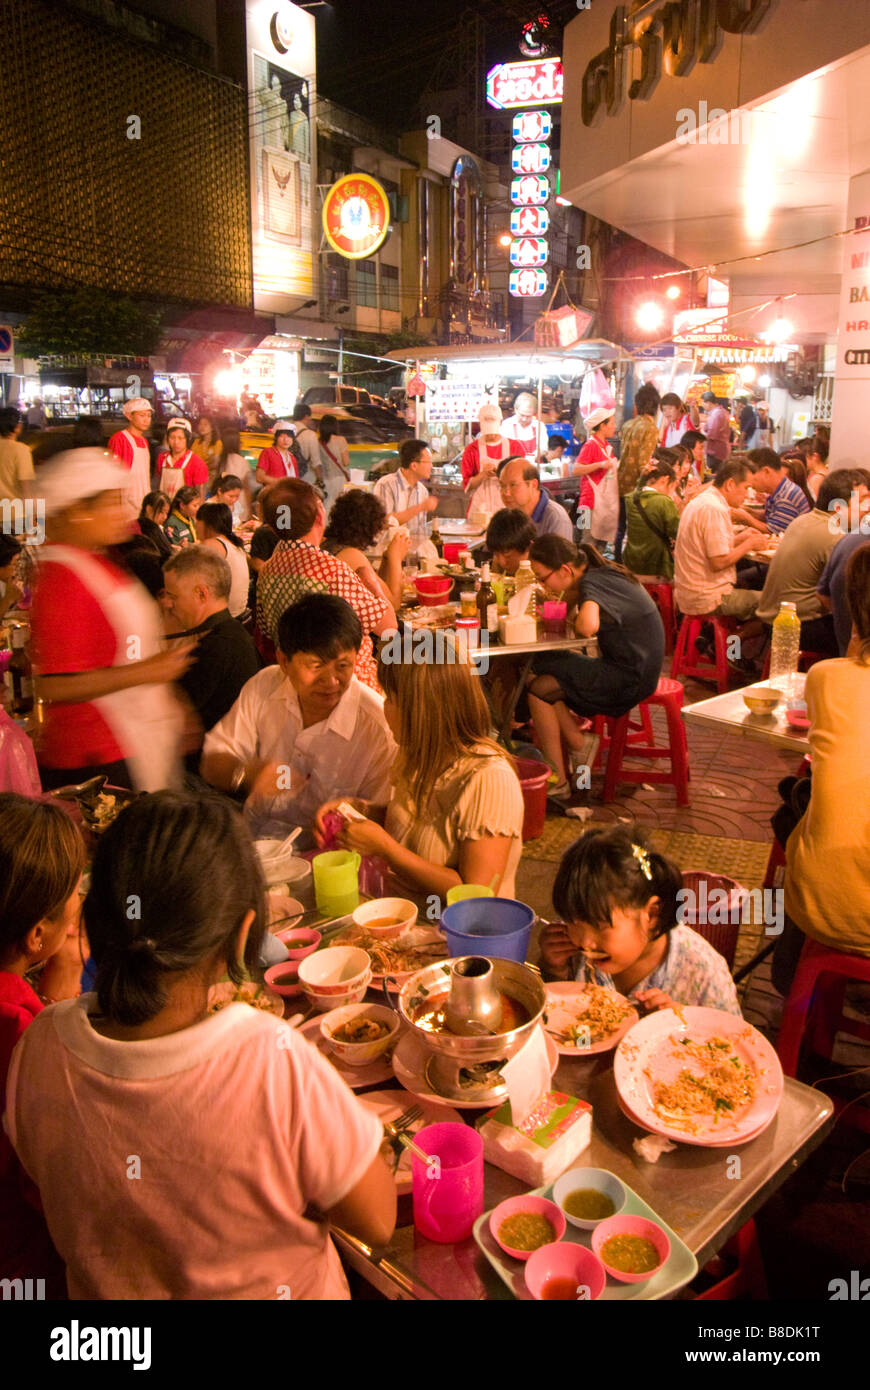 Les gens de manger au restaurant du coin de la rue animée - Thanon Yaowarat road dans le quartier chinois centre de Bangkok Thaïlande Banque D'Images